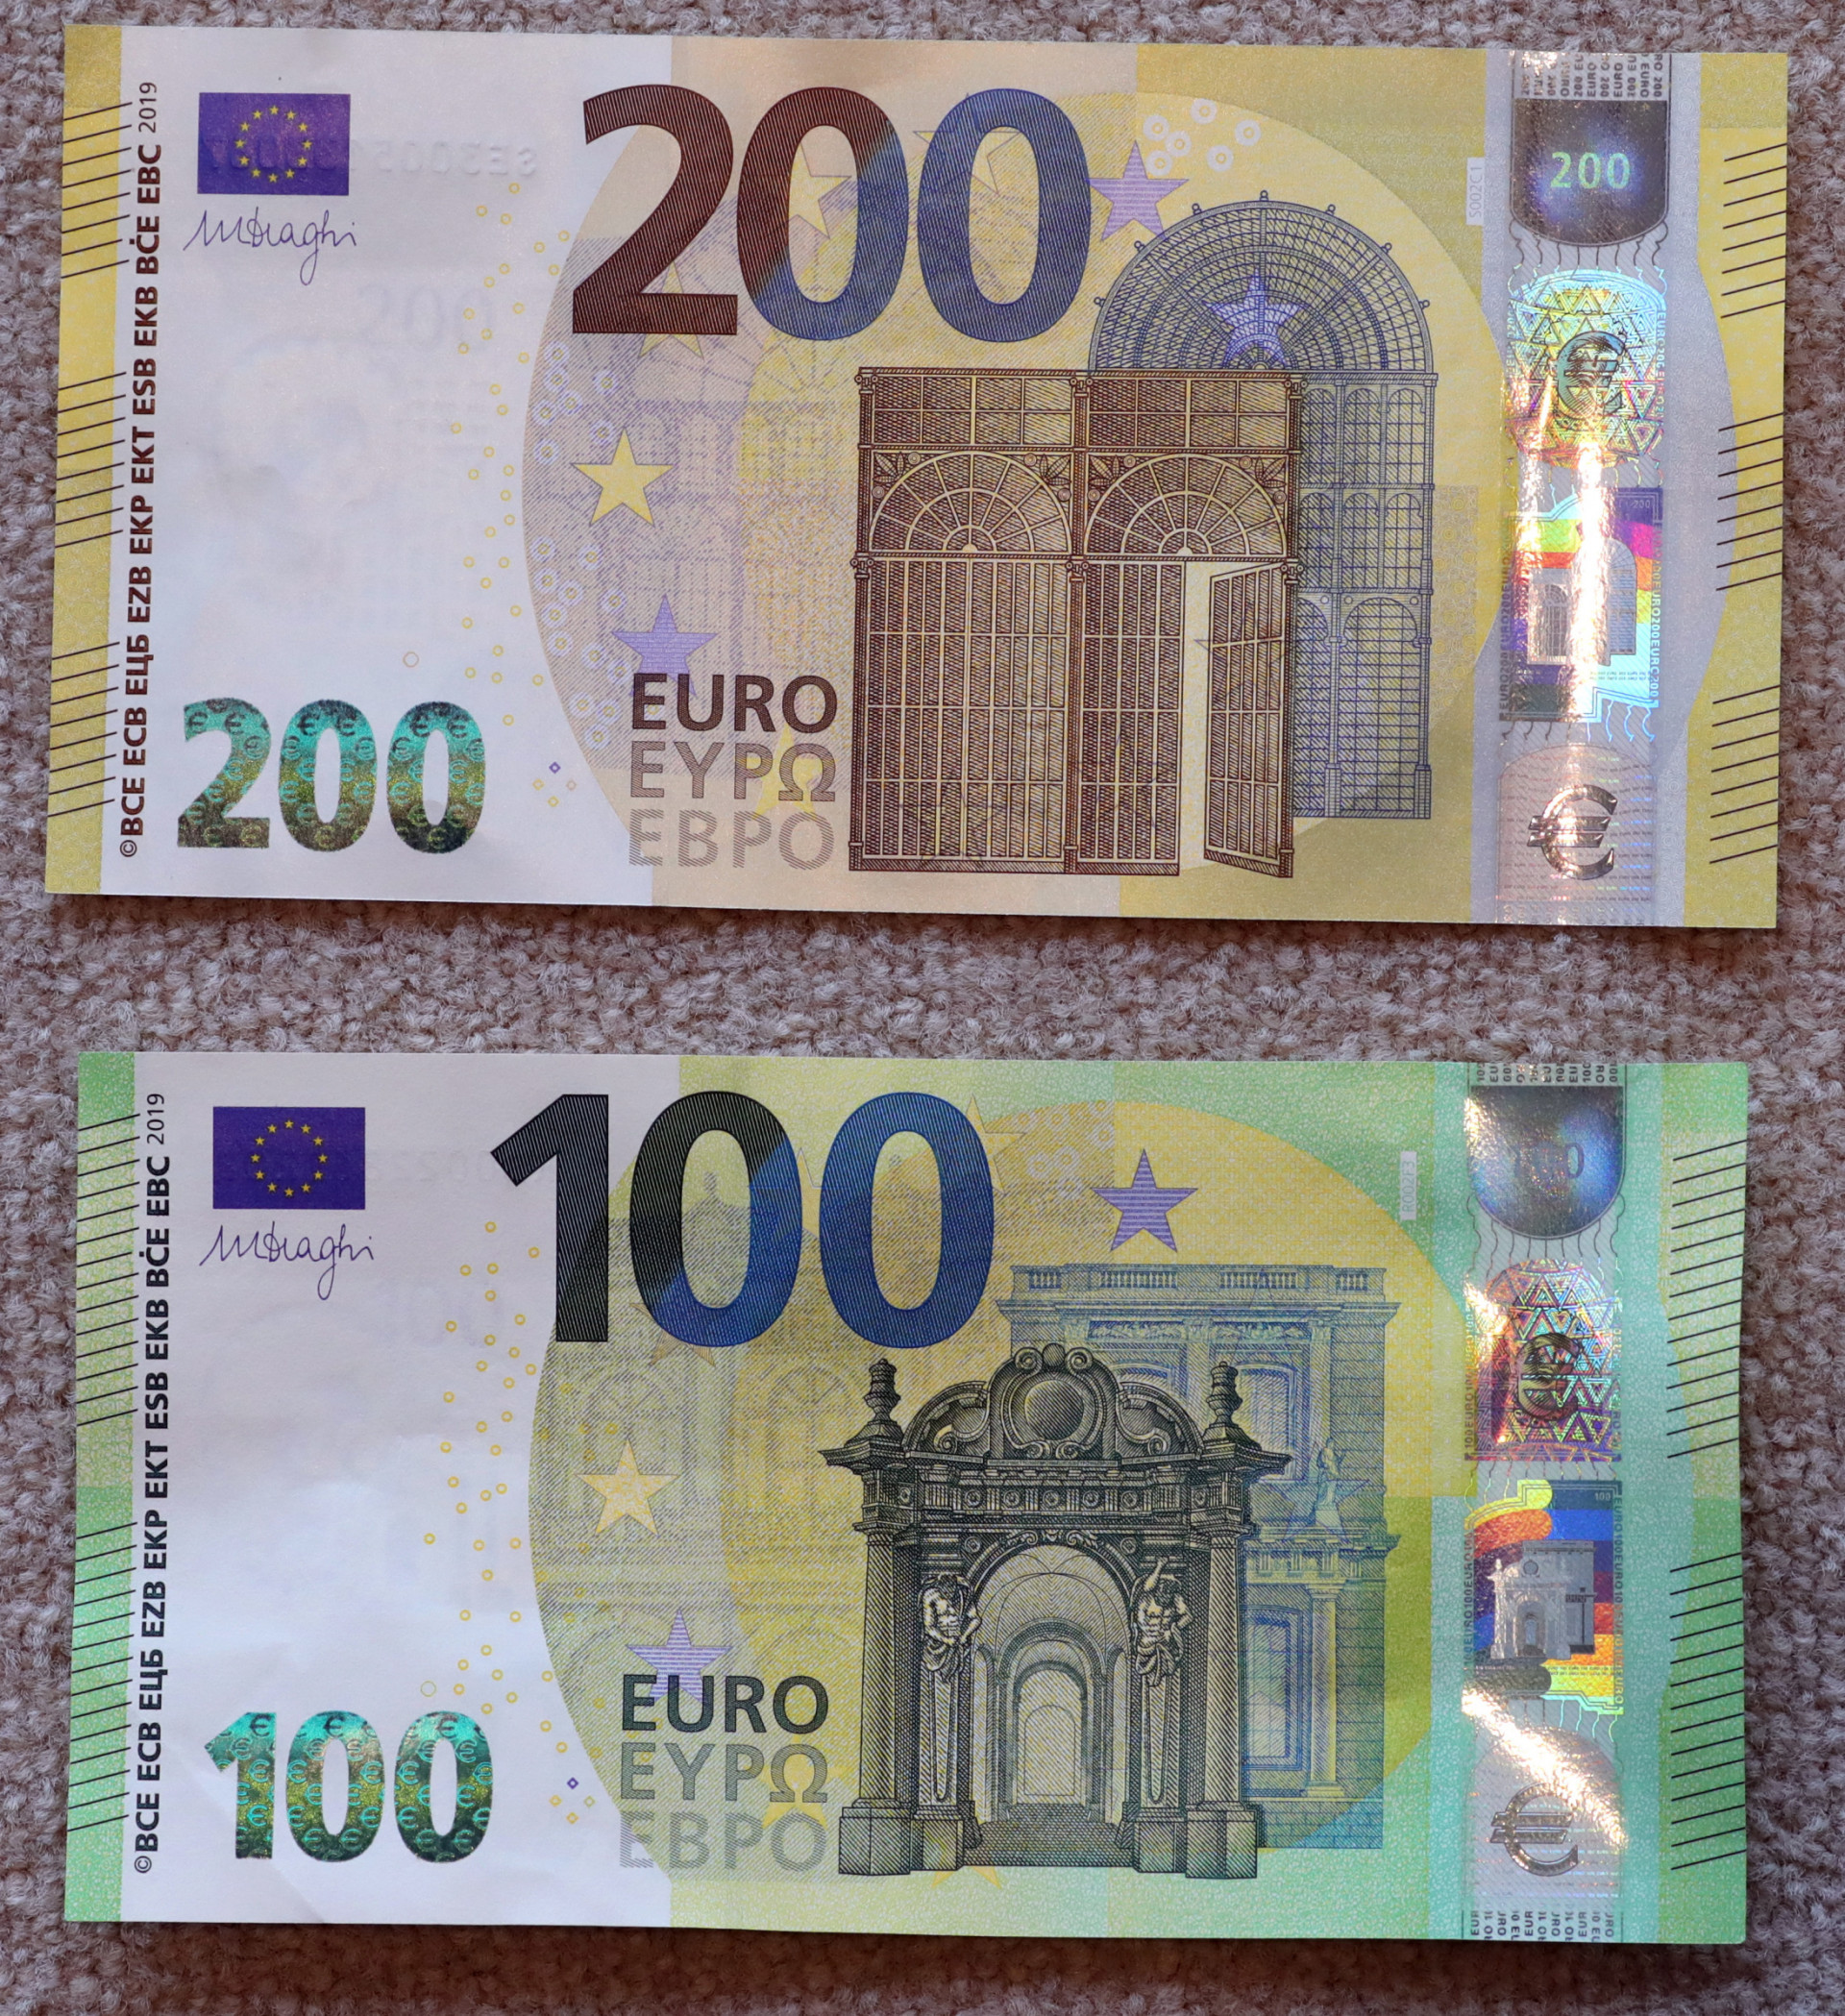 Купюры евро номиналы. Купюра 200 евро. Евро банкноты номинал 200. 200 Евро купюра новая. Купюра 200 евро как выглядит.